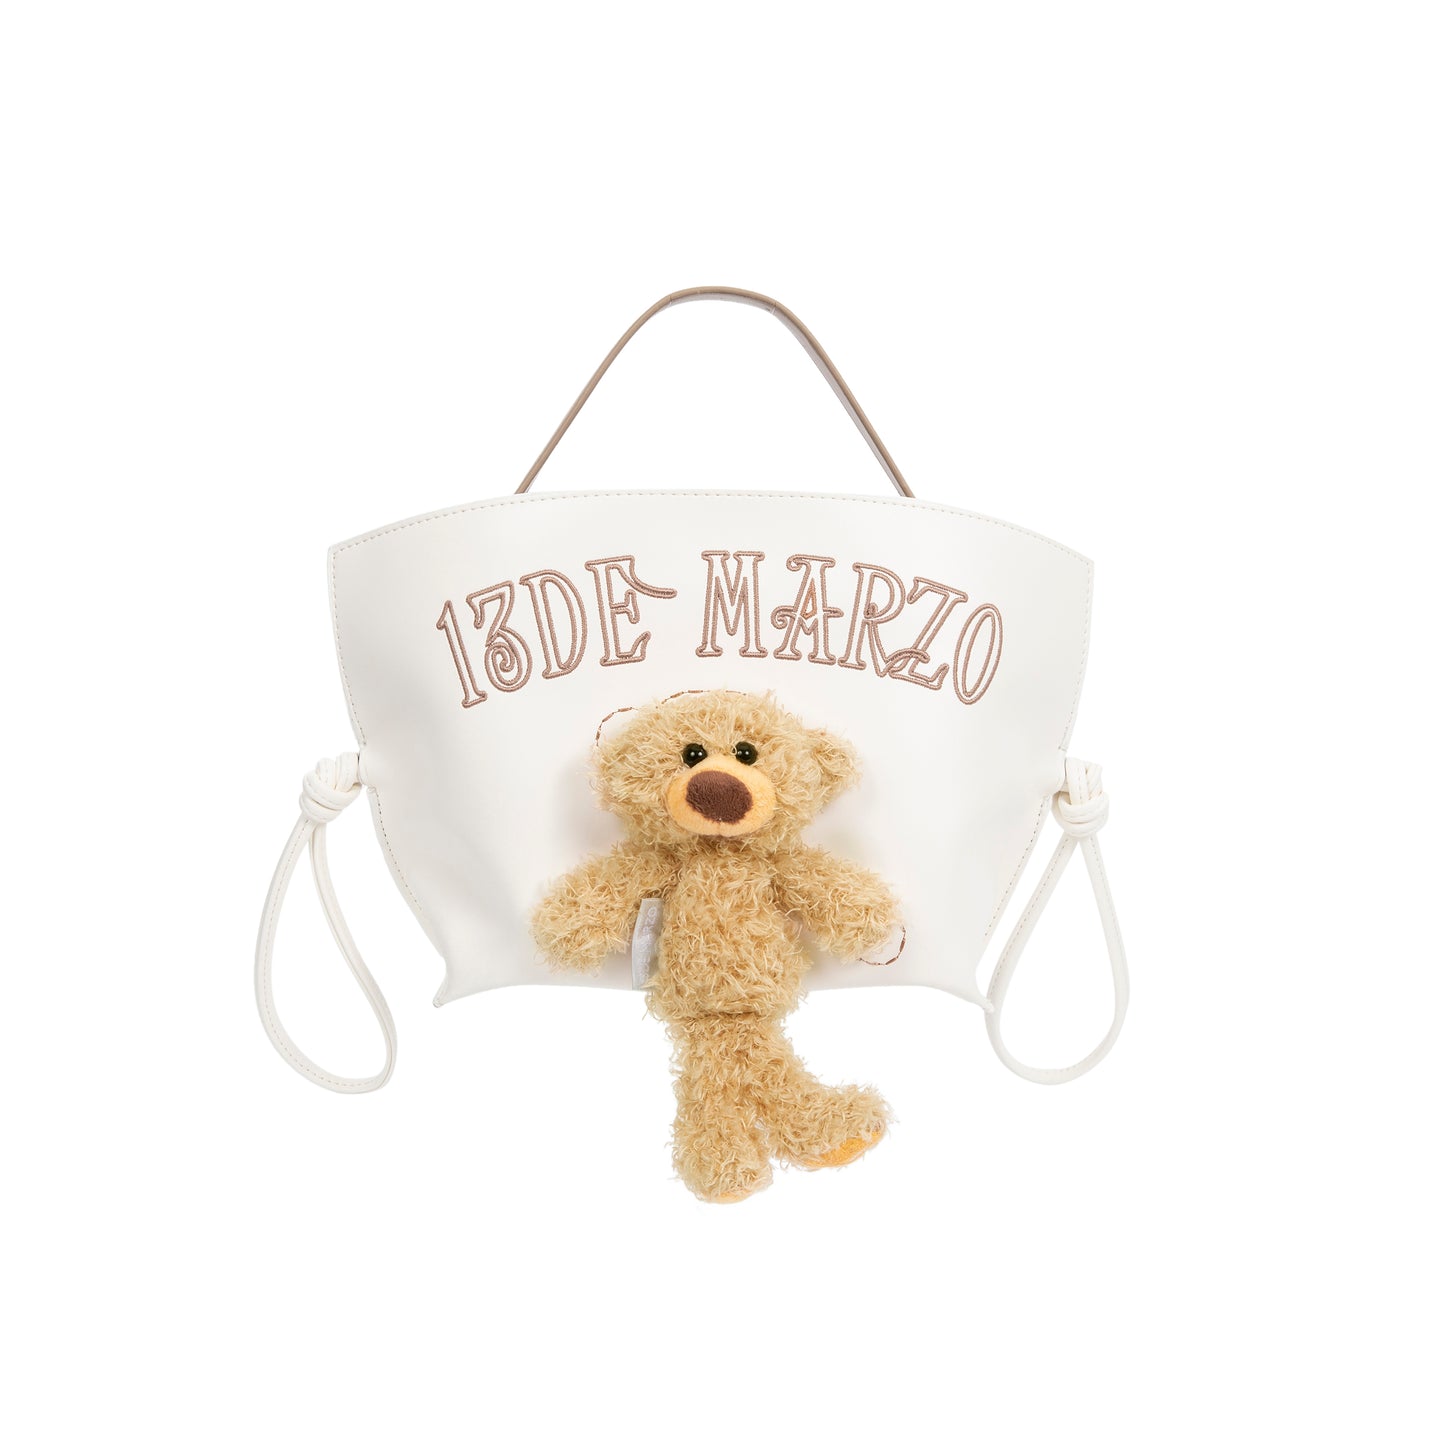 13DE MARZO Bear Cradle Bag